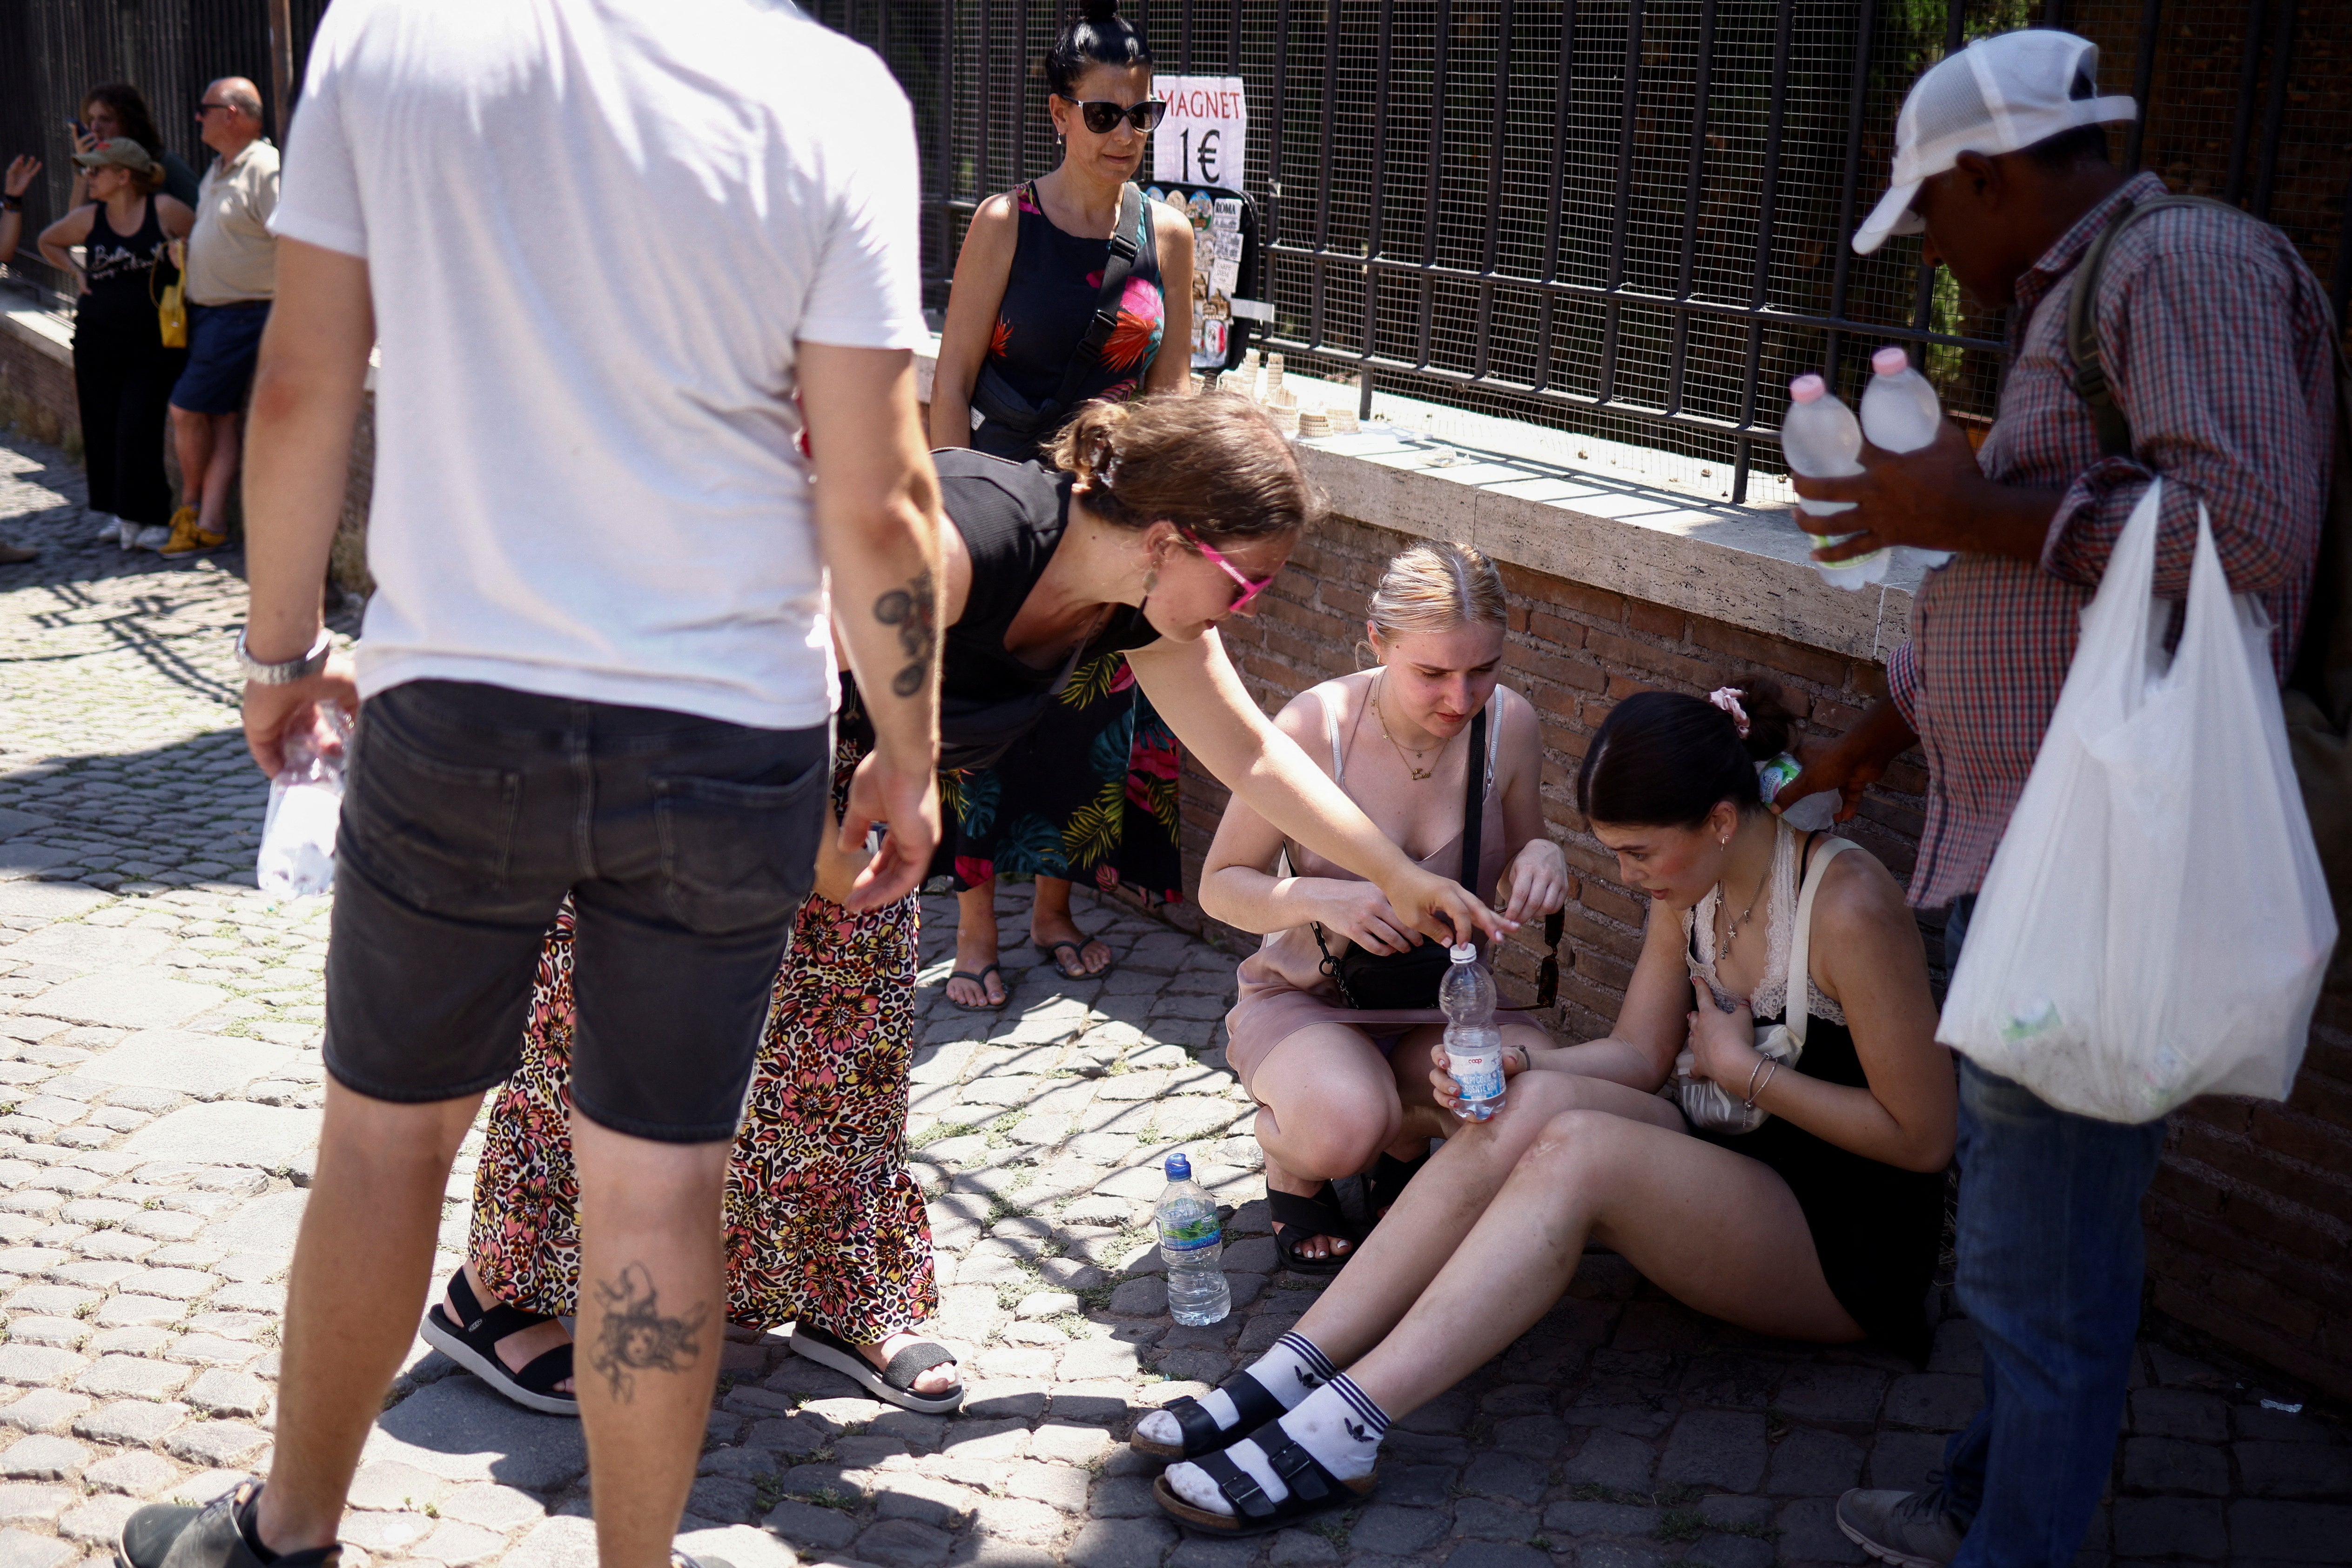 Una turista británica recibe ayuda cerca del Coliseo tras desmayarse en plena ola de calor en Italia